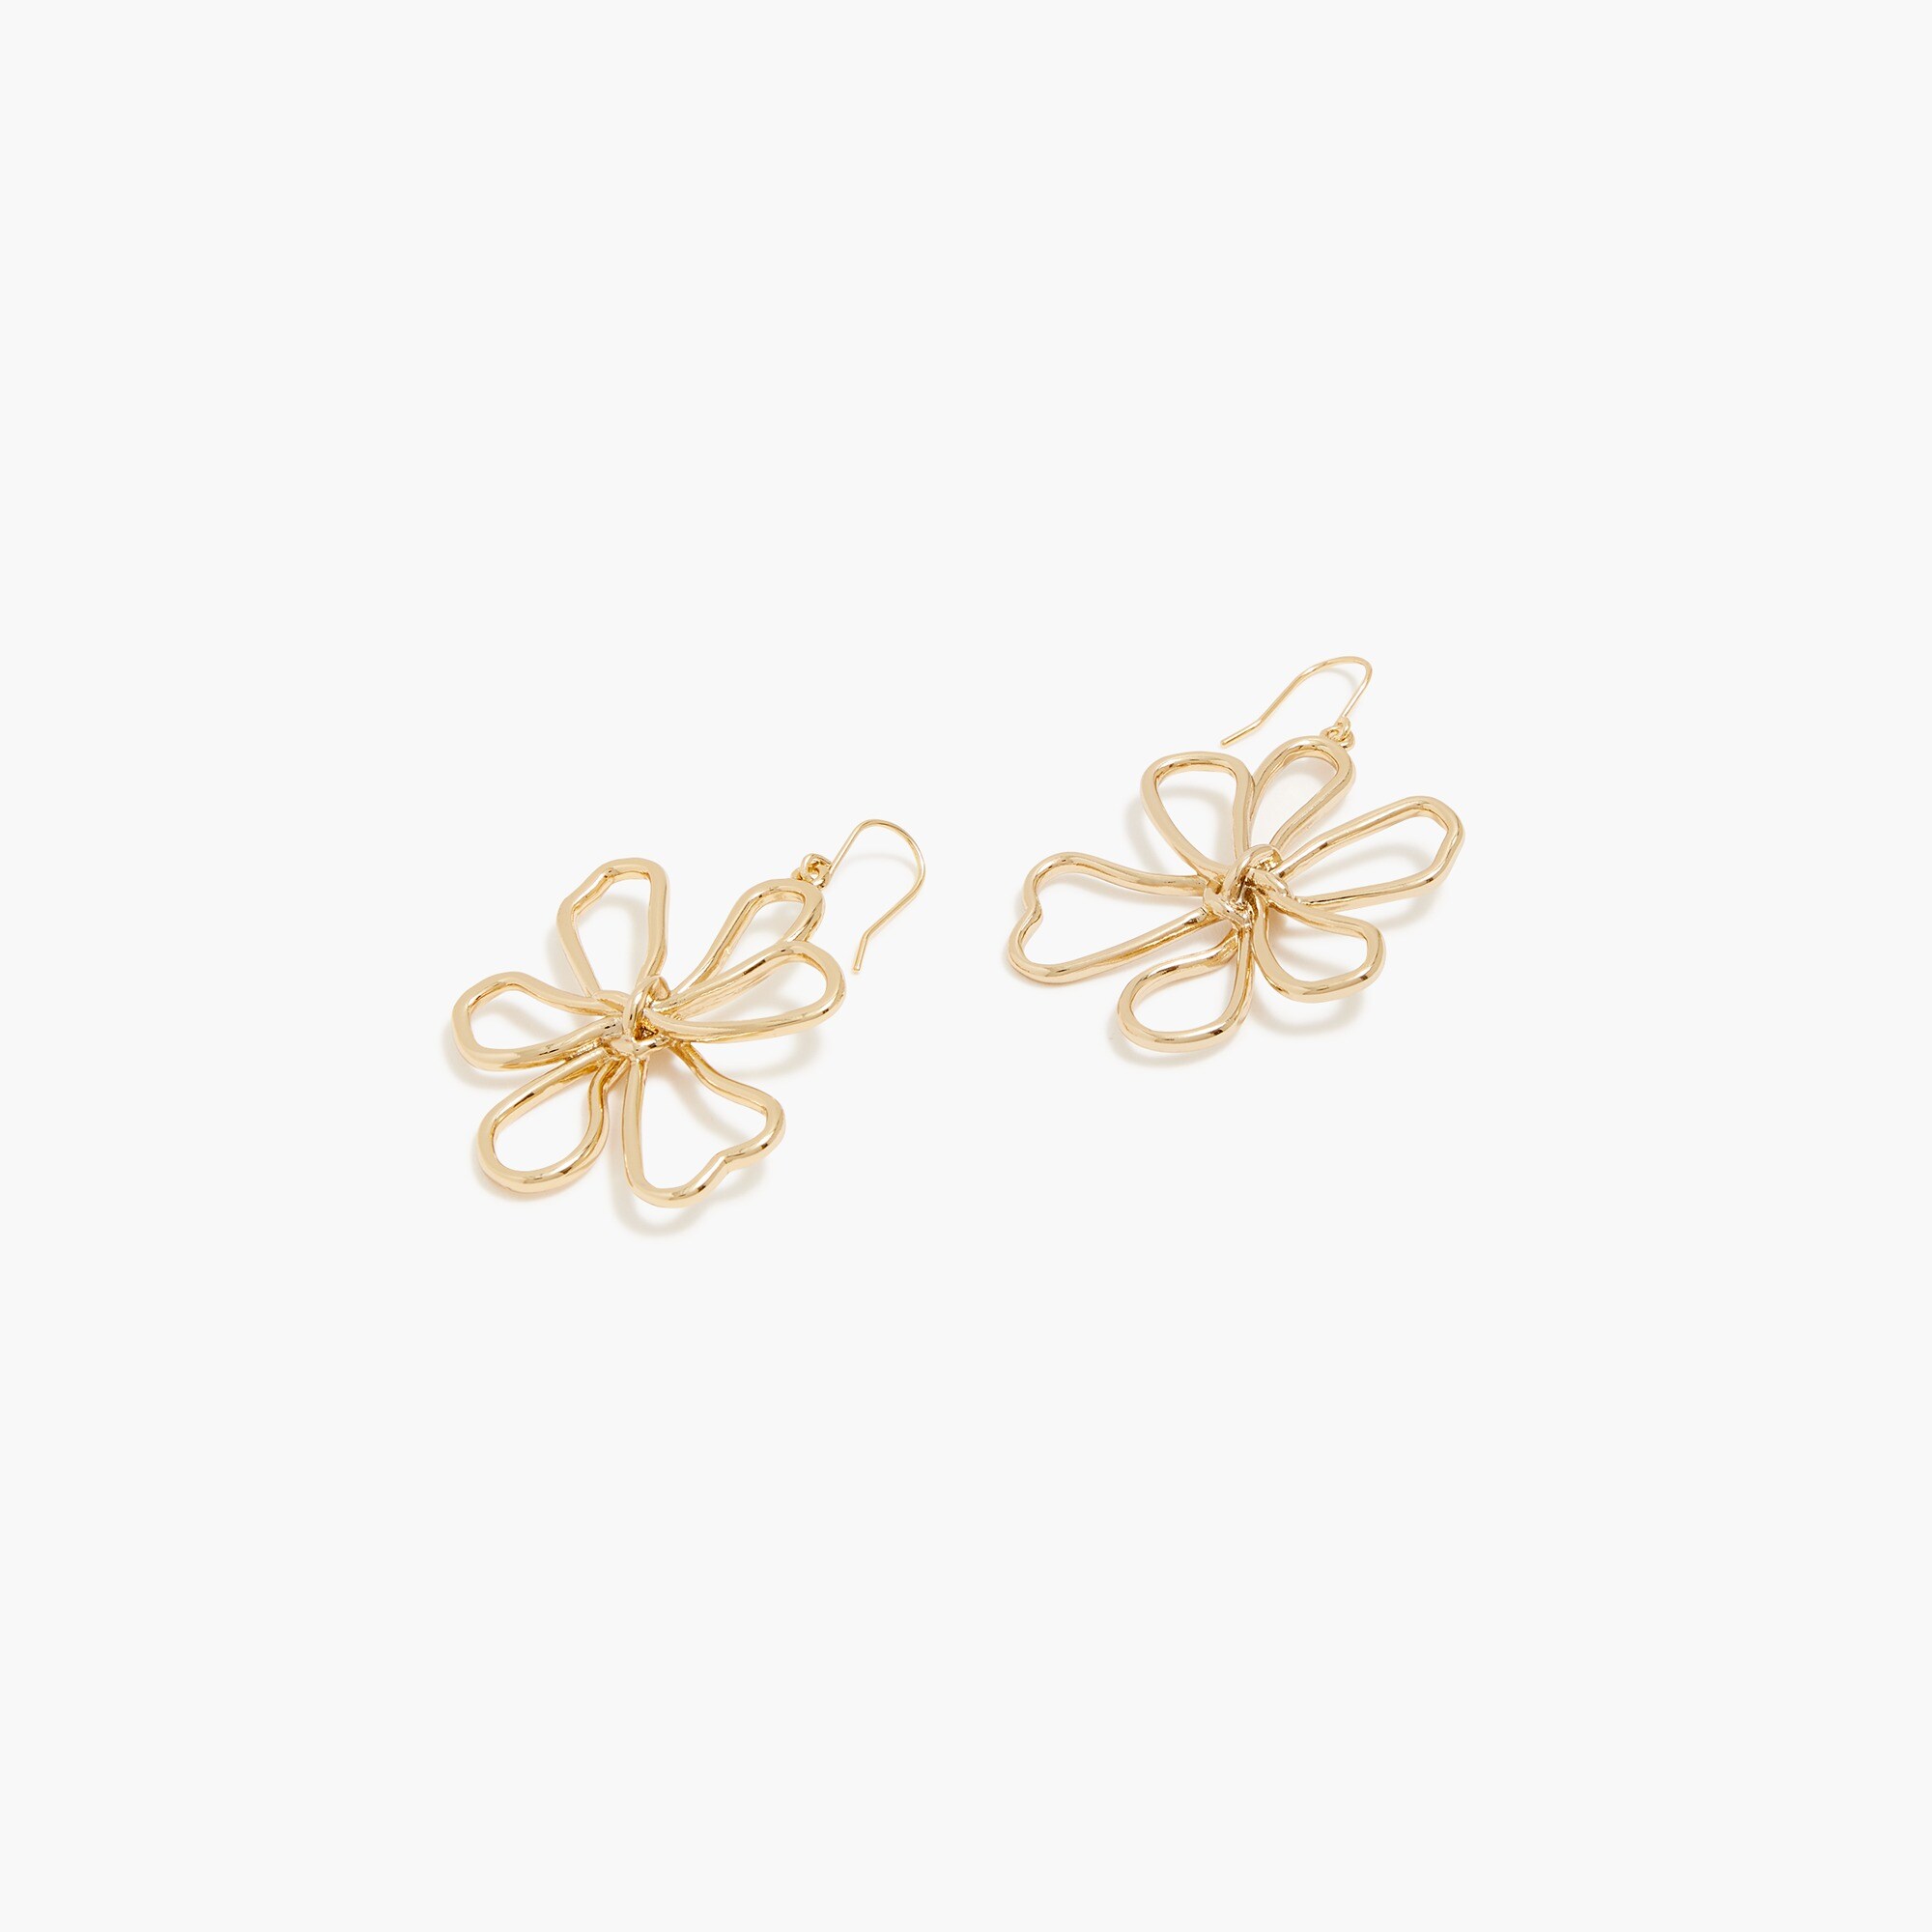  Wire flower earrings